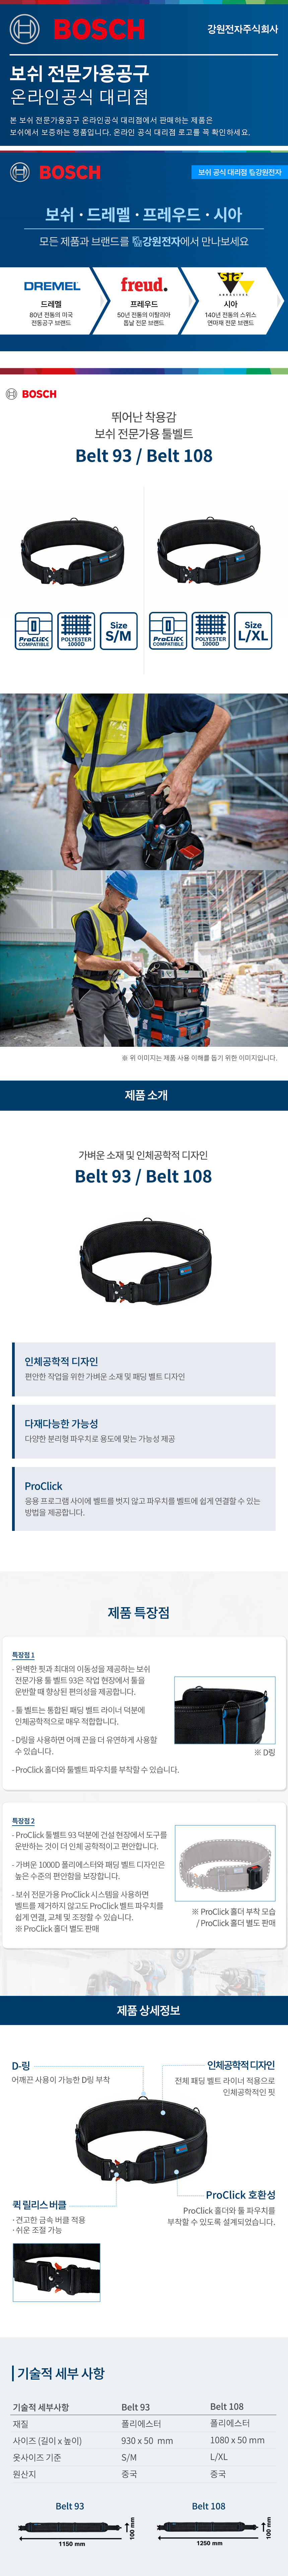 Belt_93_01.jpg